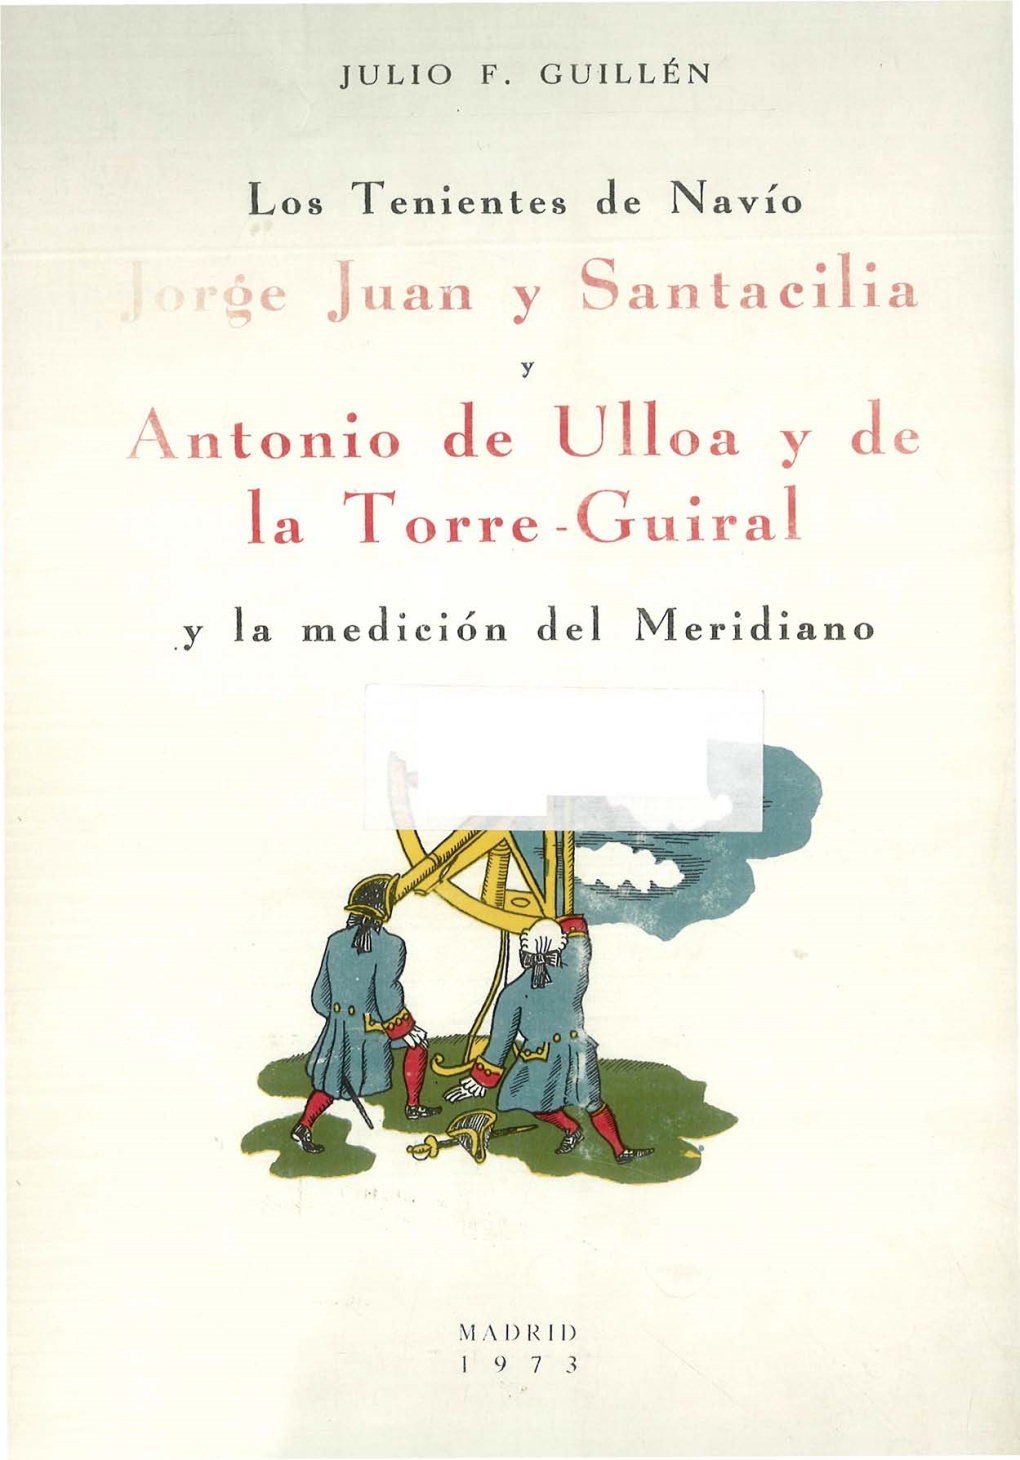 E Juan Y Santacilia a Ntonio De Ulloa Y De La Torre -Gruirá!